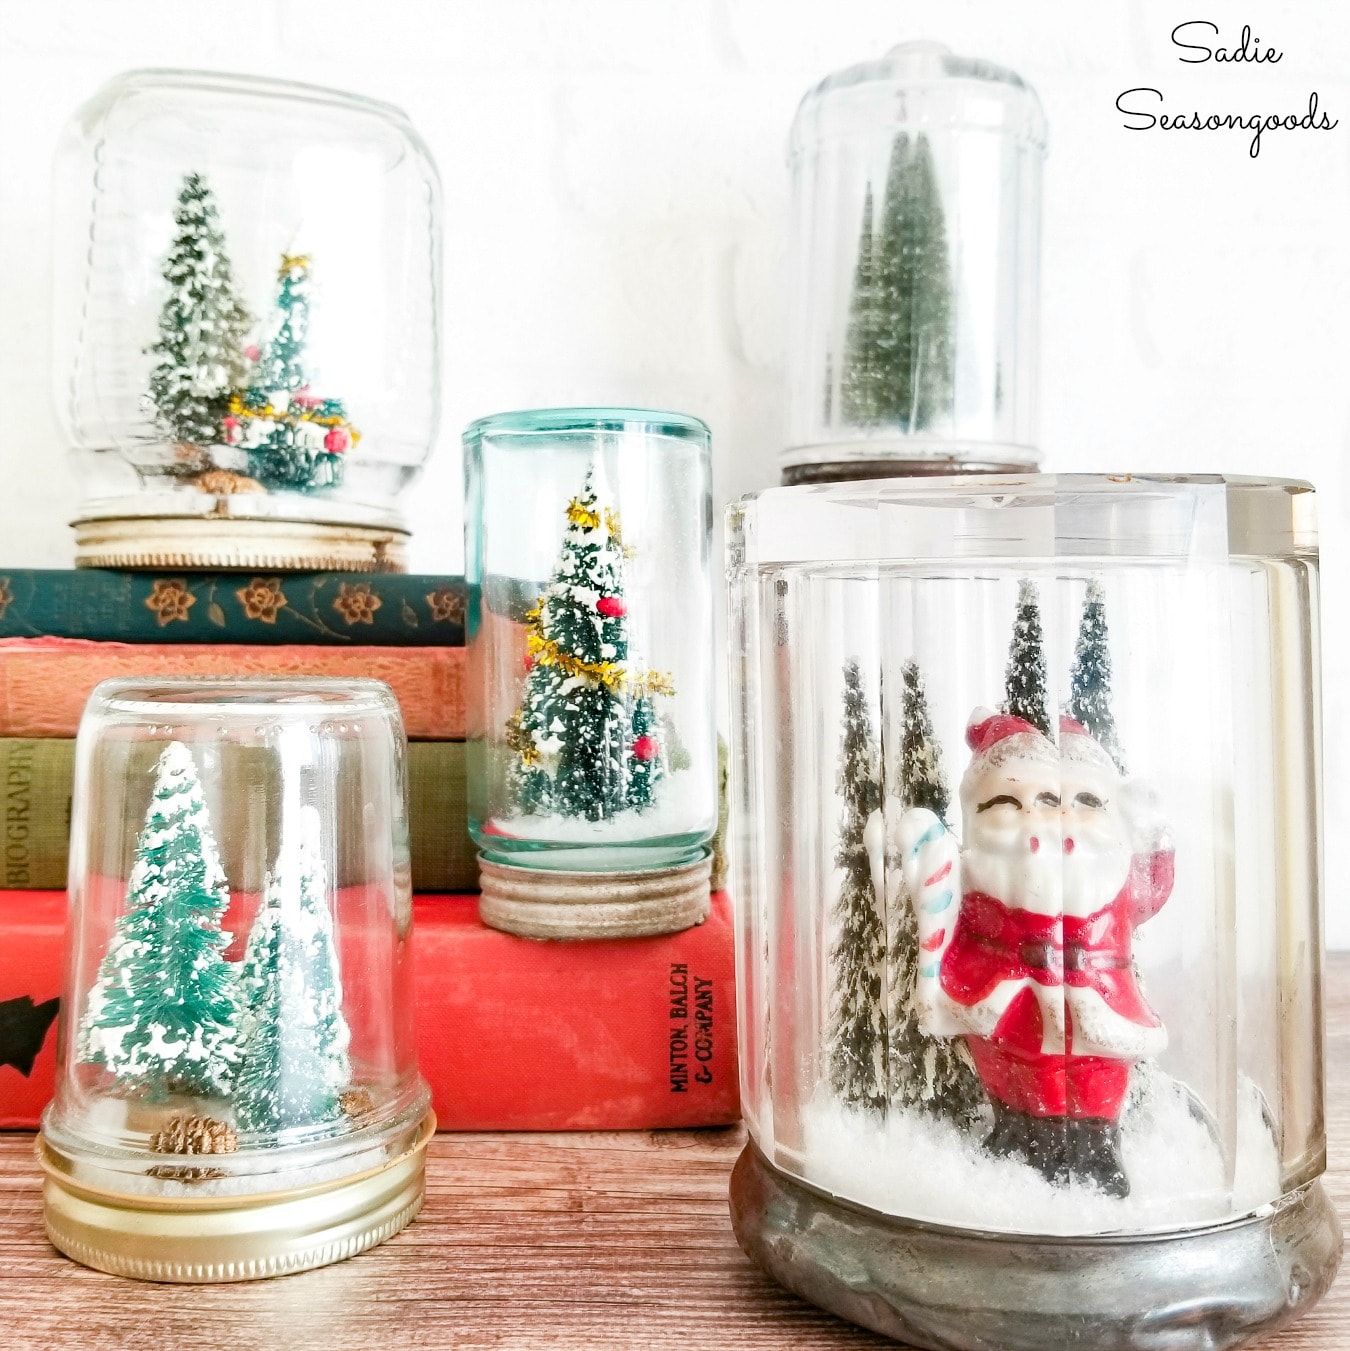 https://www.sadieseasongoods.com/wp-content/uploads/2014/12/diy-waterless-snow-globe-in-a-vintage-glass-jar.jpg